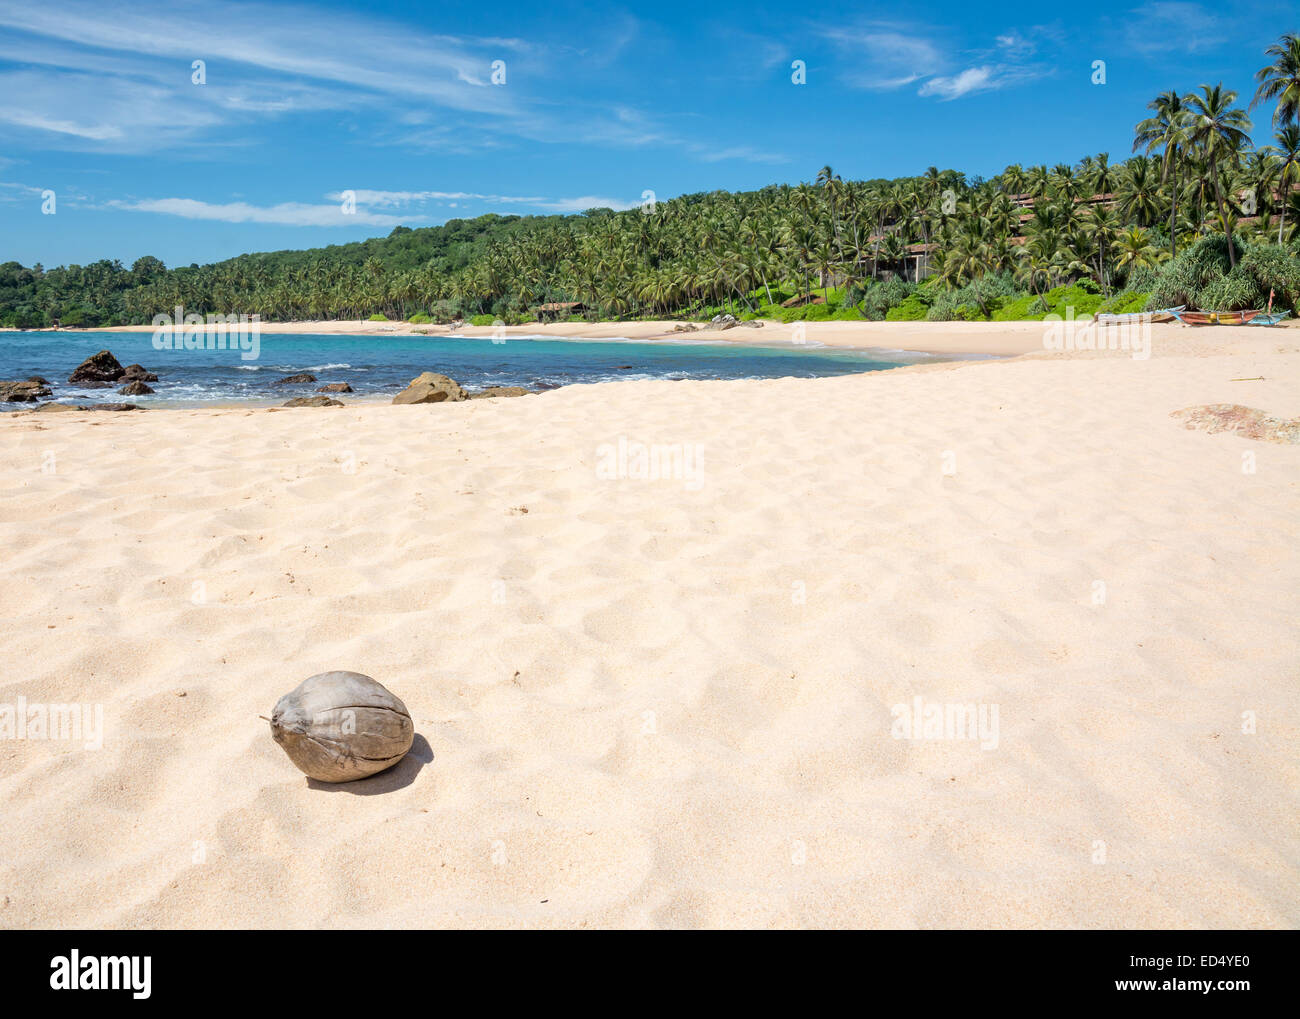 Strand mit Kokosnuss. Paradies-Strand mit weißem Sand und Kokospalmen. Aman Strand, Tangalle, südlichen Provinz, Sri Lanka, Asien. Stockfoto